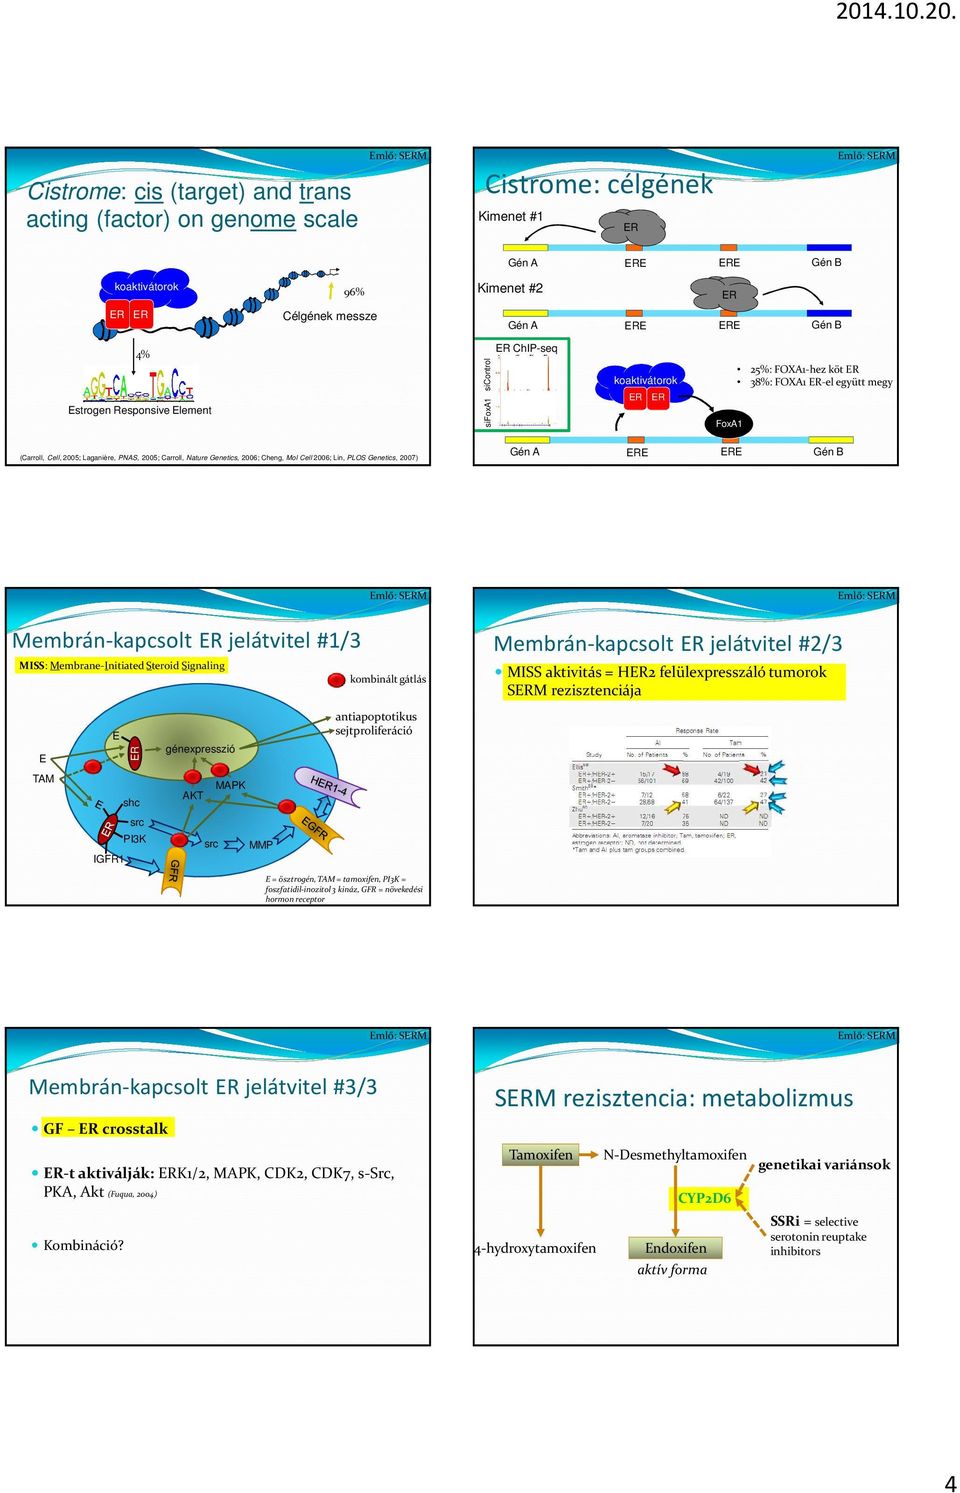 Lin, PLOS Genetics, 2007) Gén A E E Gén B Membrán-kapcsolt jelátvitel #1/3 MISS: Membrane-Initiated Steroid Signaling kombinált gátlás Membrán-kapcsolt jelátvitel #2/3 MISS aktivitás = H2